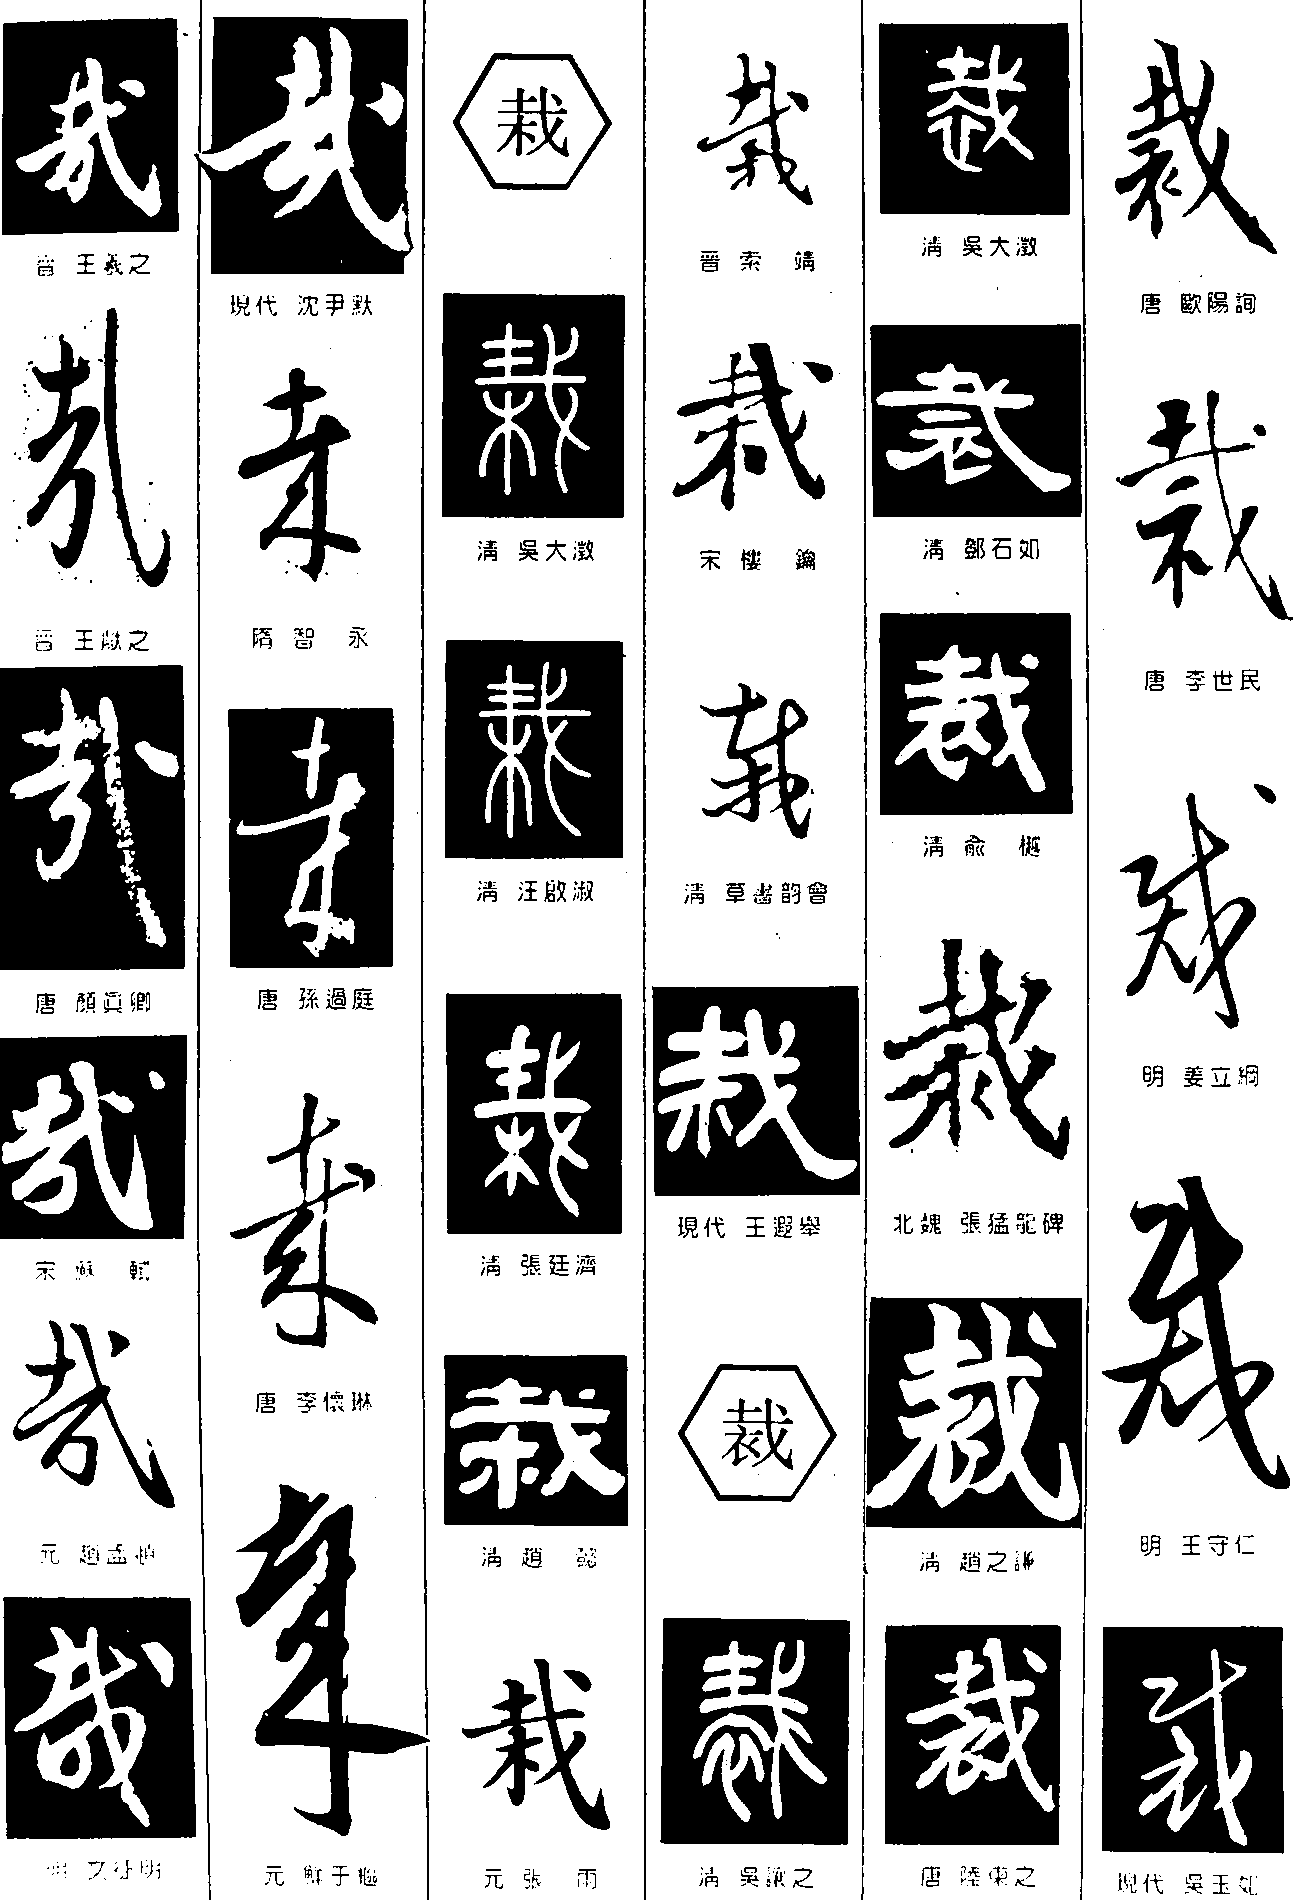 哉_书法字体_字体设计作品-中国字体设计网_ziti.cndesign.com